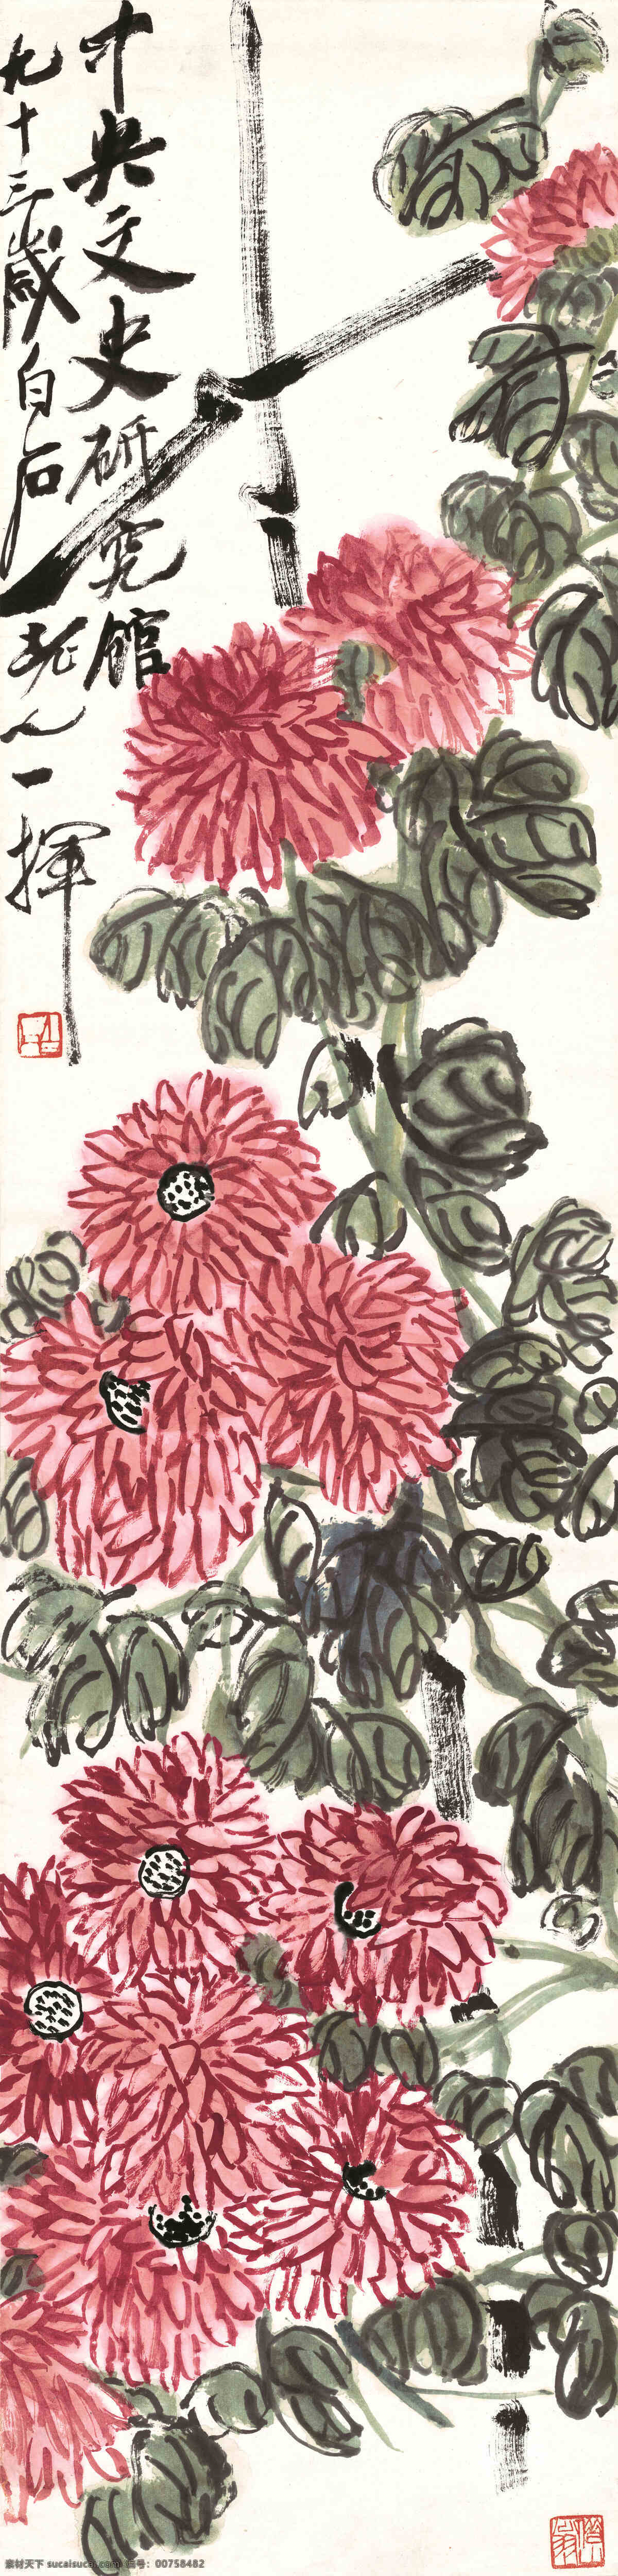 齐白石 菊花设计素材 菊花模板下载 菊花 红菊 藤蔓 叶子 绘画书法 文化艺术 白色